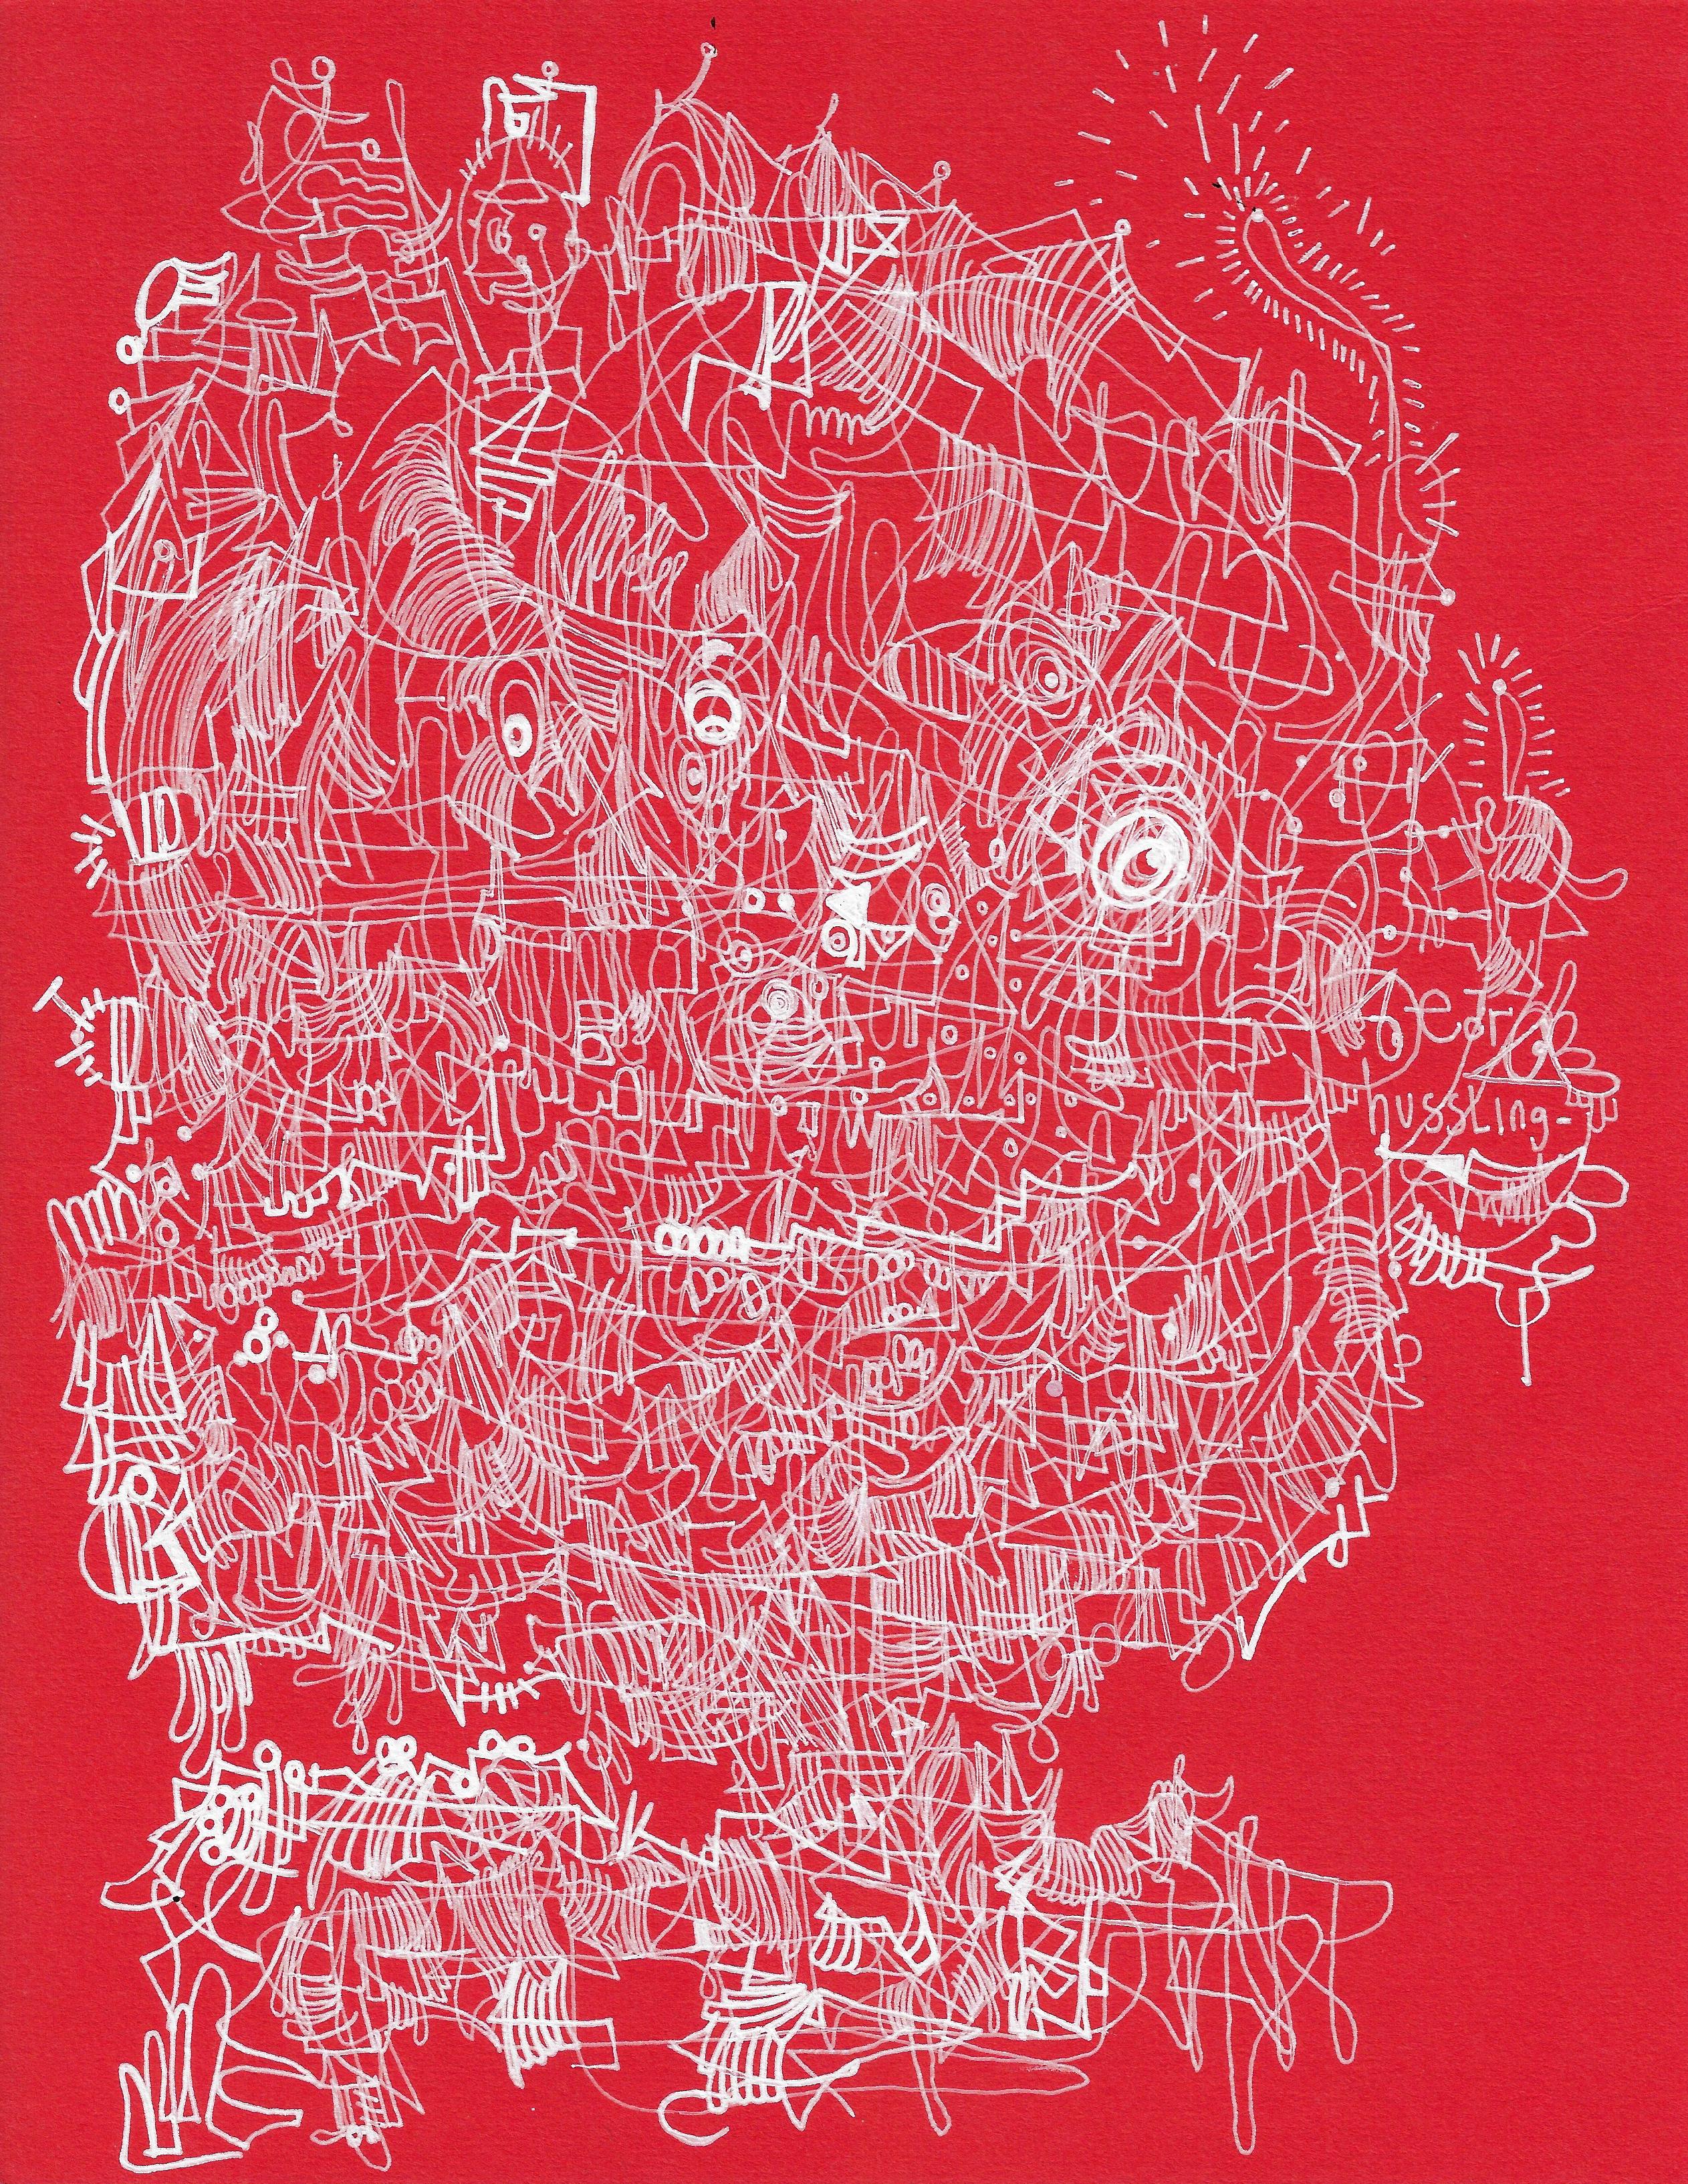 Tinte auf rotem Archivpapier

Michael Alan ist ein 1977 geborener amerikanischer Künstler, der in New York, USA, lebt und arbeitet. Als multidisziplinärer Künstler. Seine Arbeiten wurden in vielen Einzelausstellungen, über 200 Gruppenausstellungen